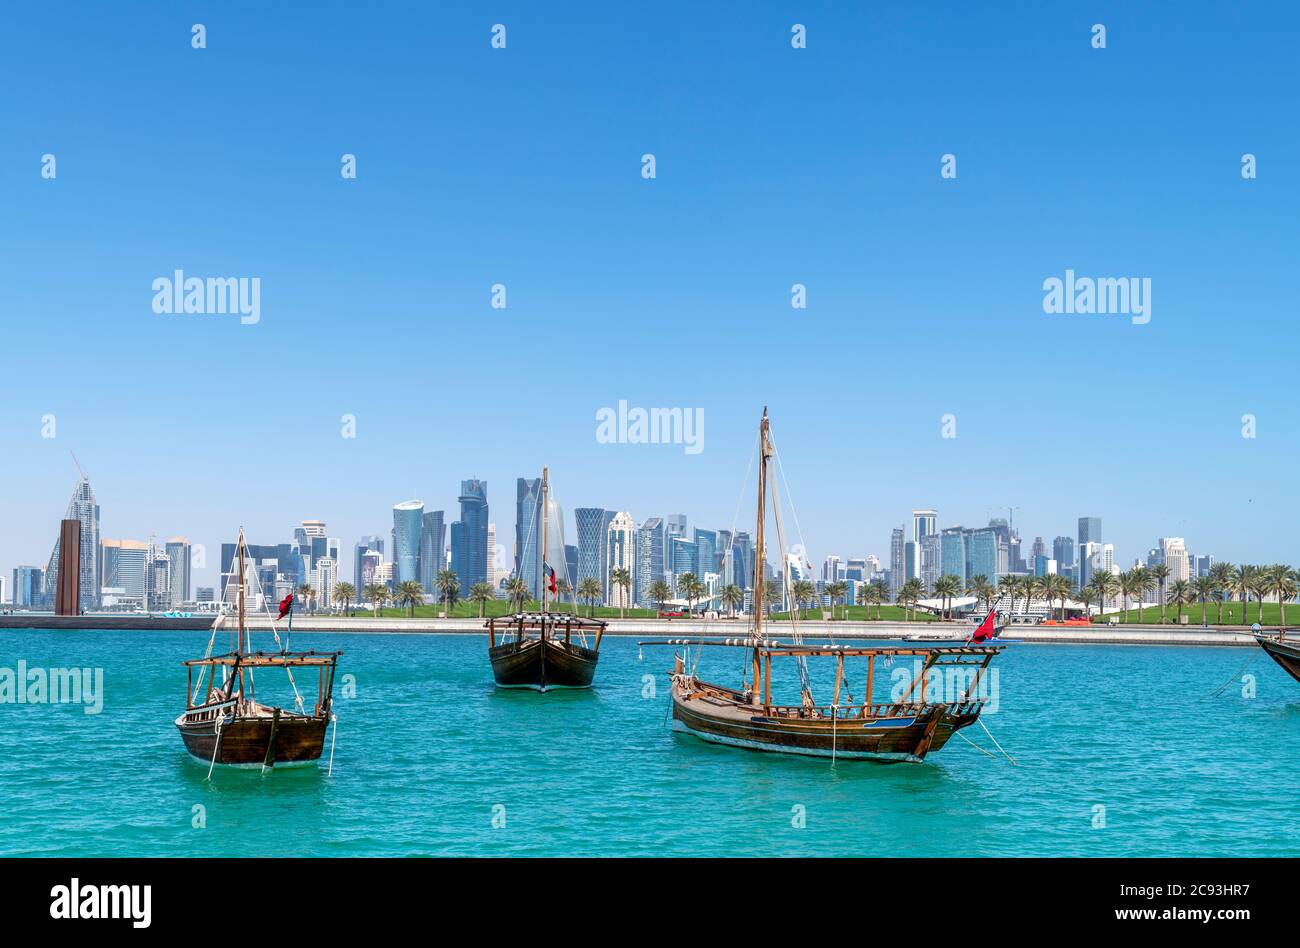 Les huws traditionnels et la ligne d'horizon du quartier central des affaires de West Bay depuis MIA Park, Doha, Qatar, Moyen-Orient Banque D'Images